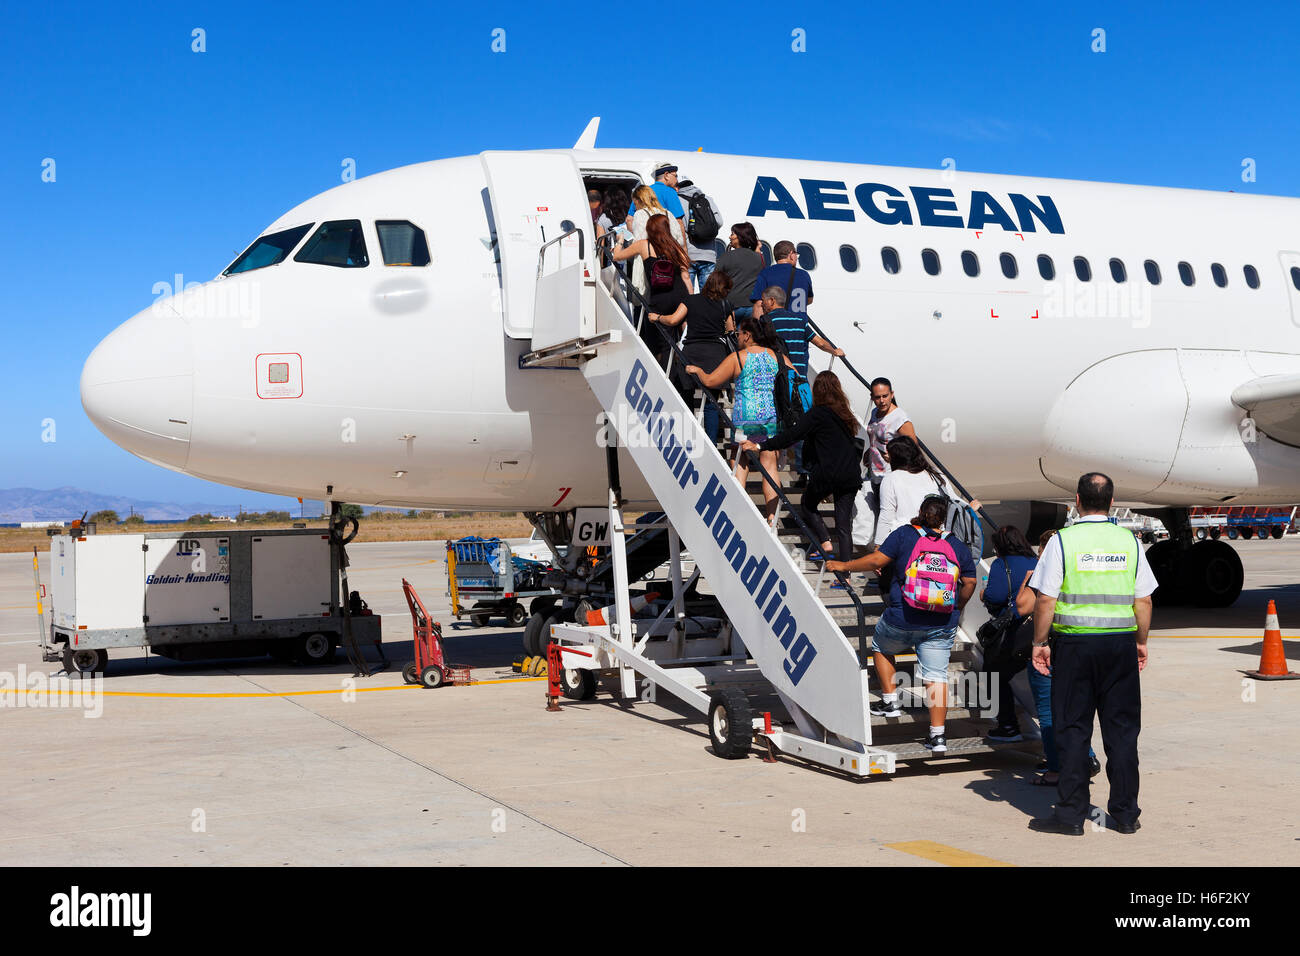 Fluggästen eine kommerzielle Düsenflugzeug am internationalen Flughafen Rhodos Diagoras. Stockfoto